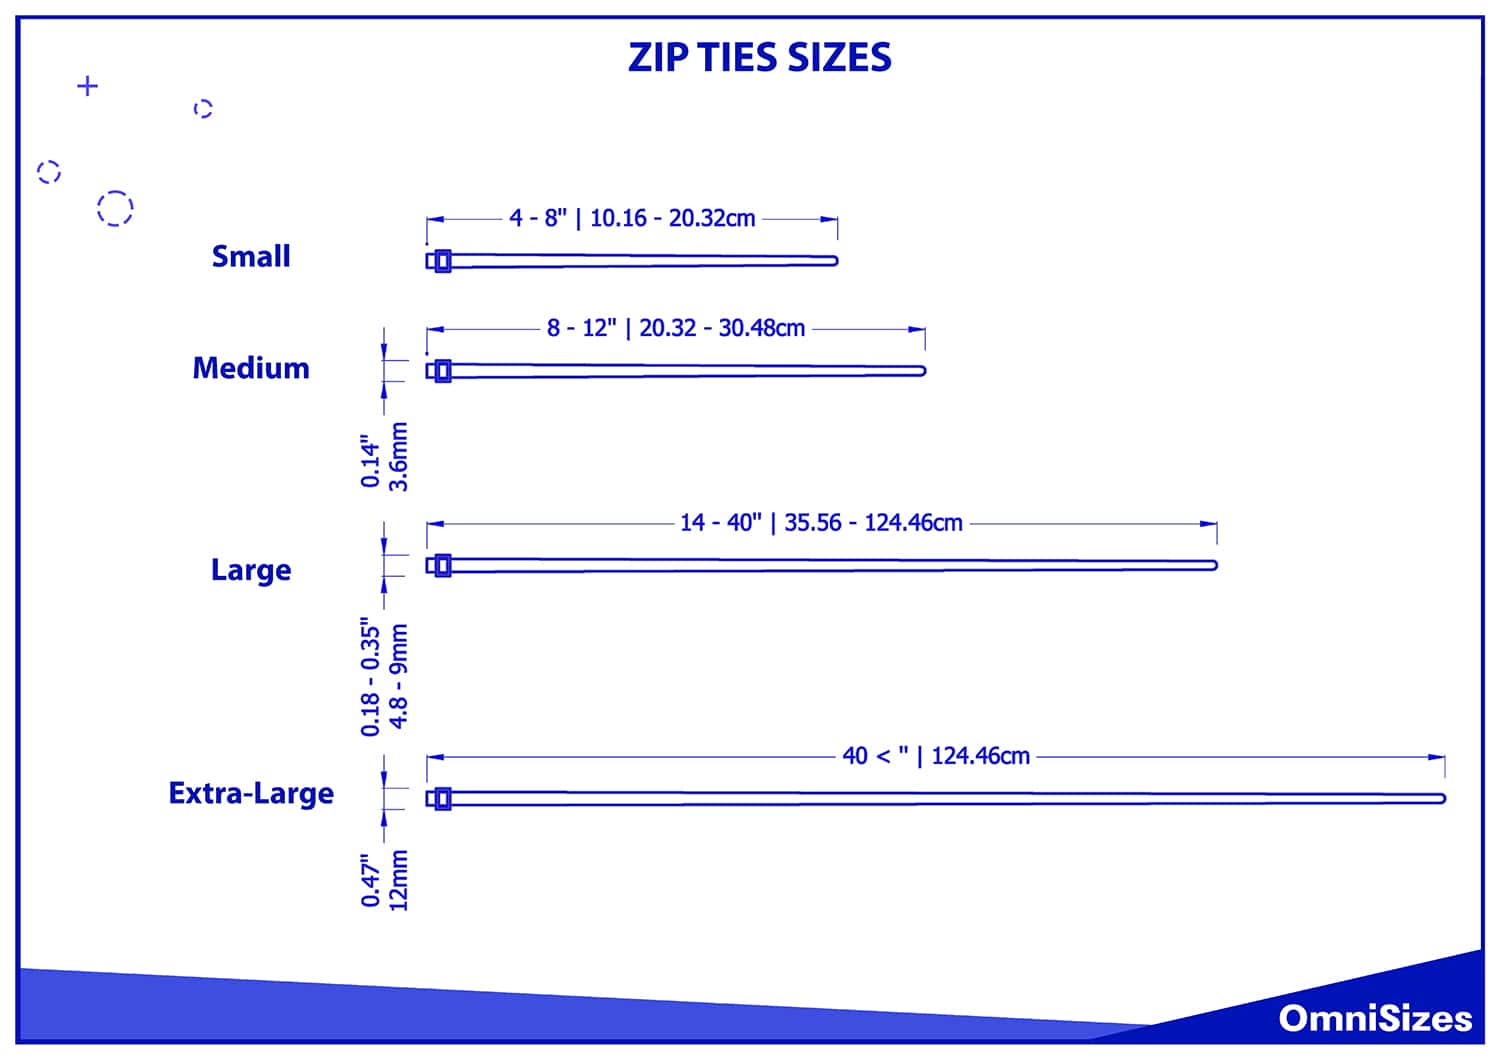 Zip ties sizes